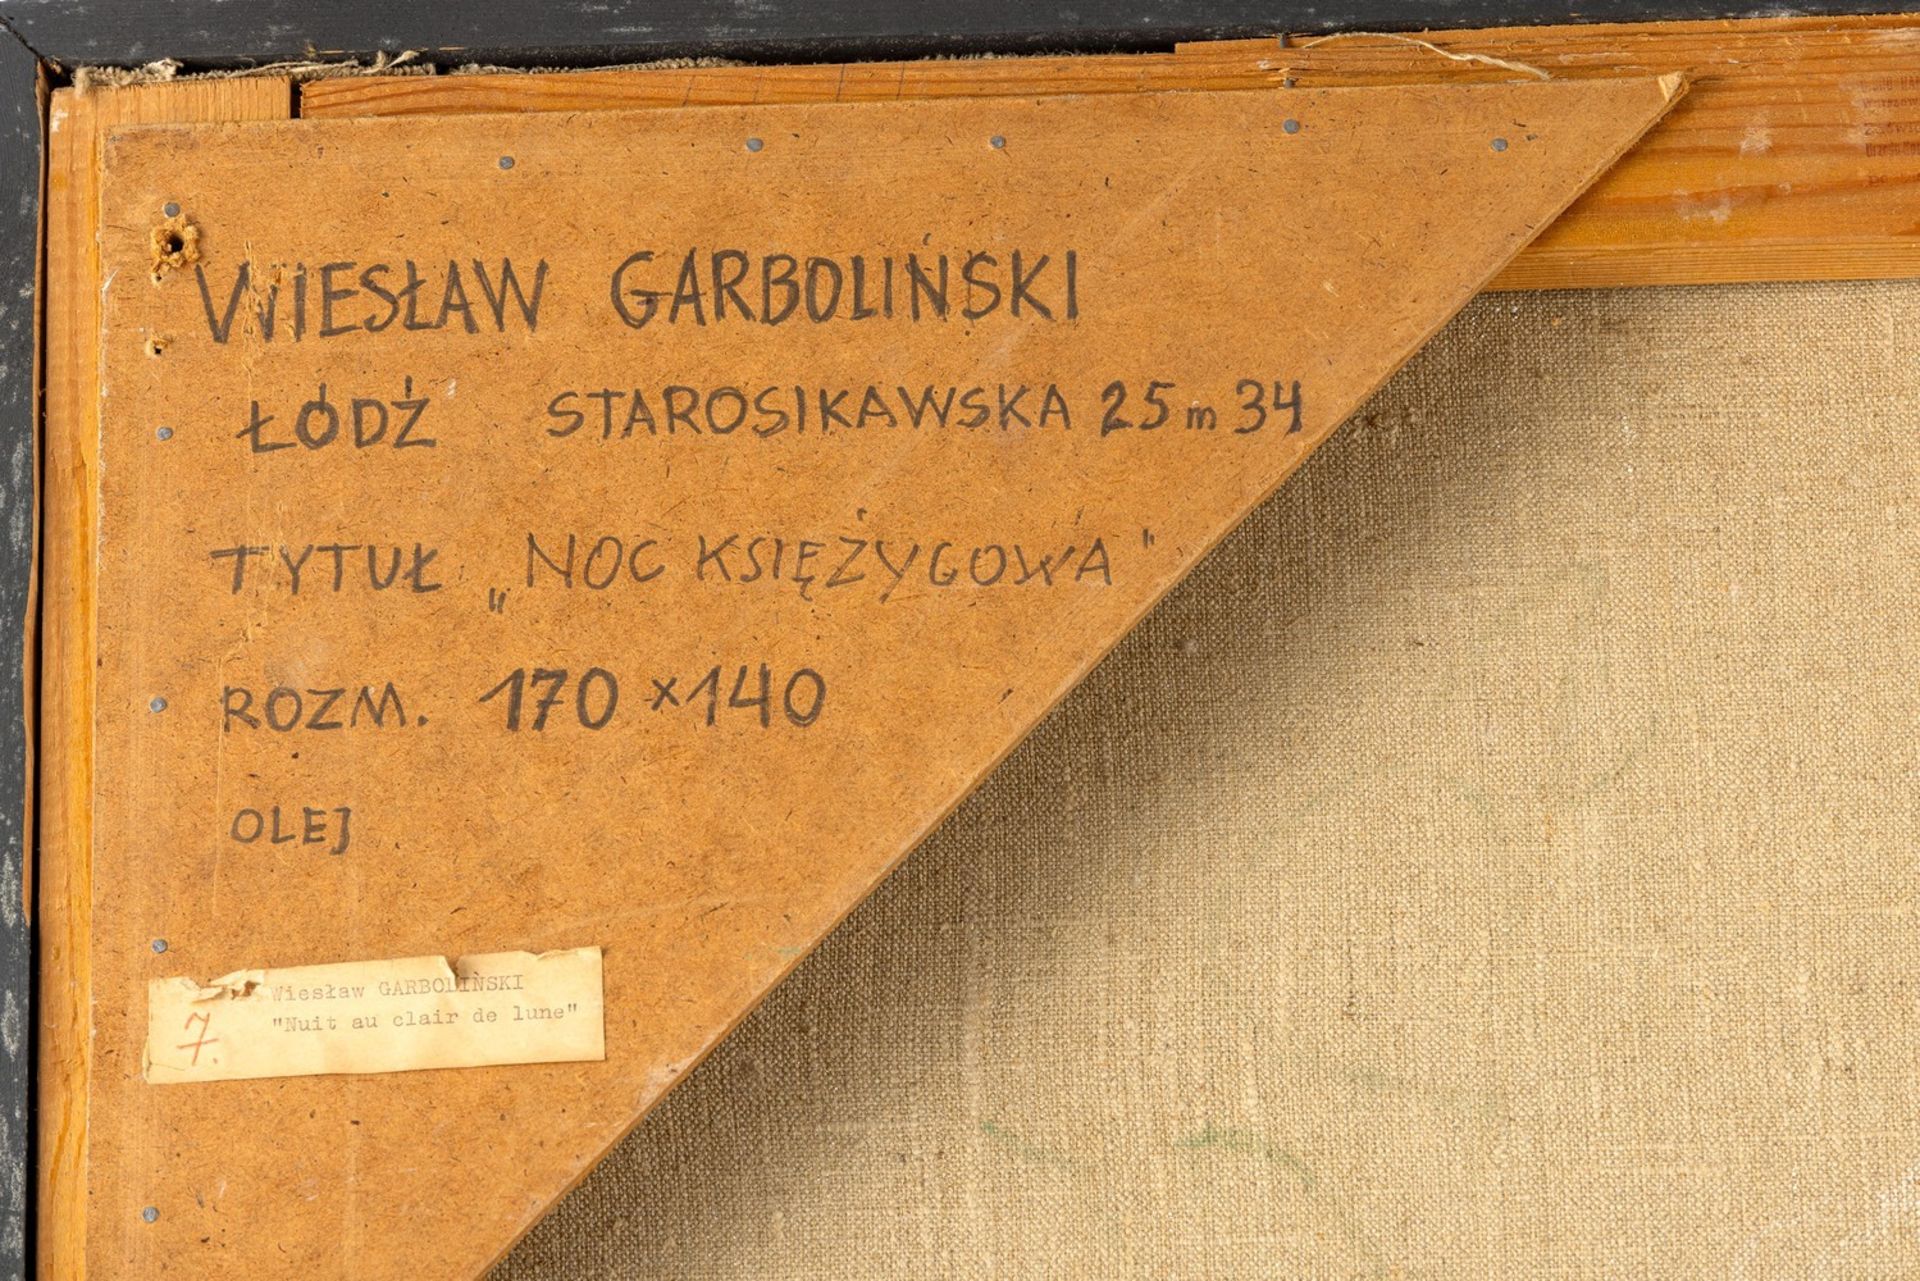 Garboliński, Wiesław (Głownie, Łódź 1927-2014)  - Bild 4 aus 4